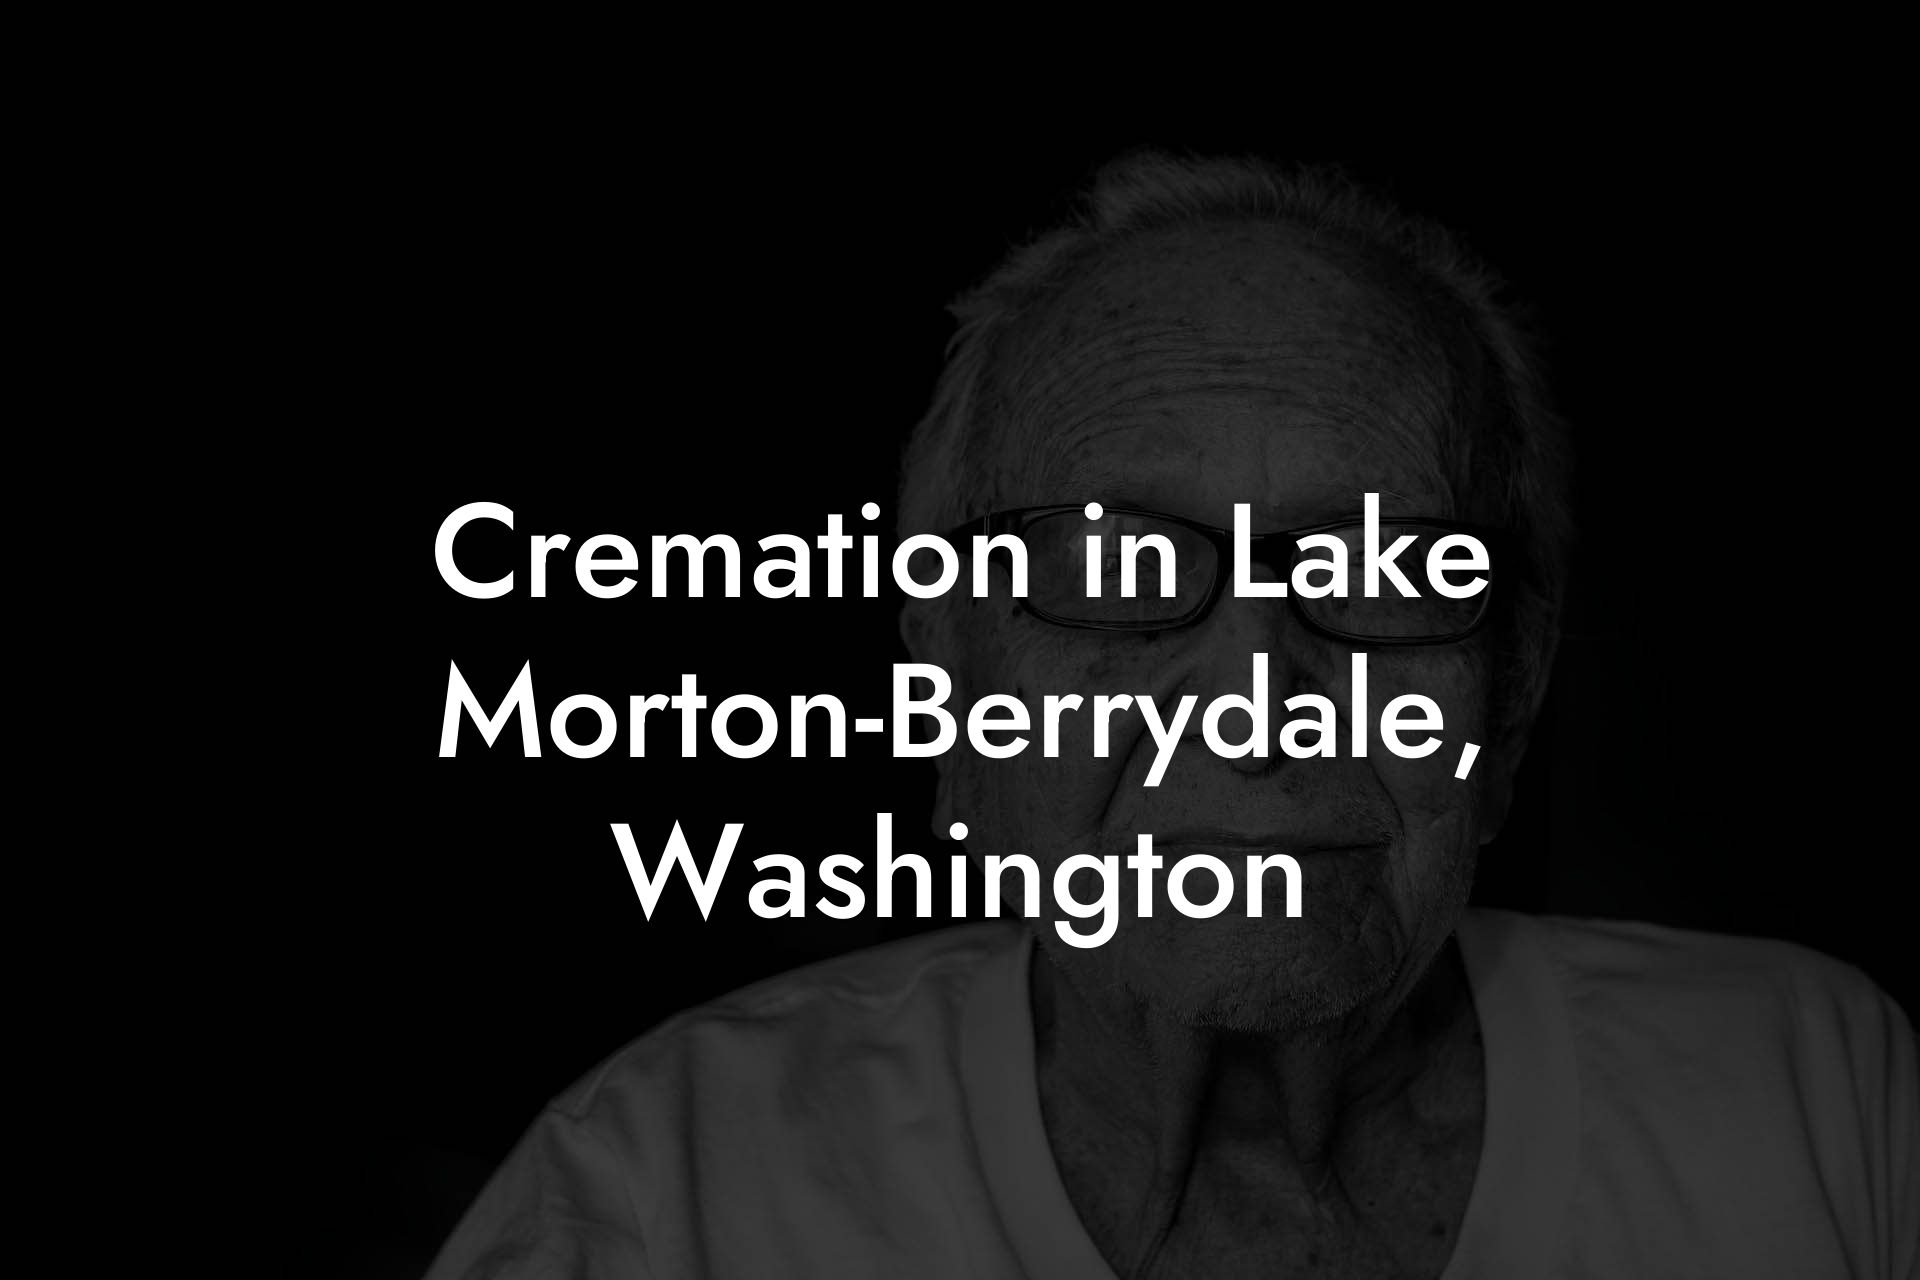 Cremation in Lake Morton-Berrydale, Washington